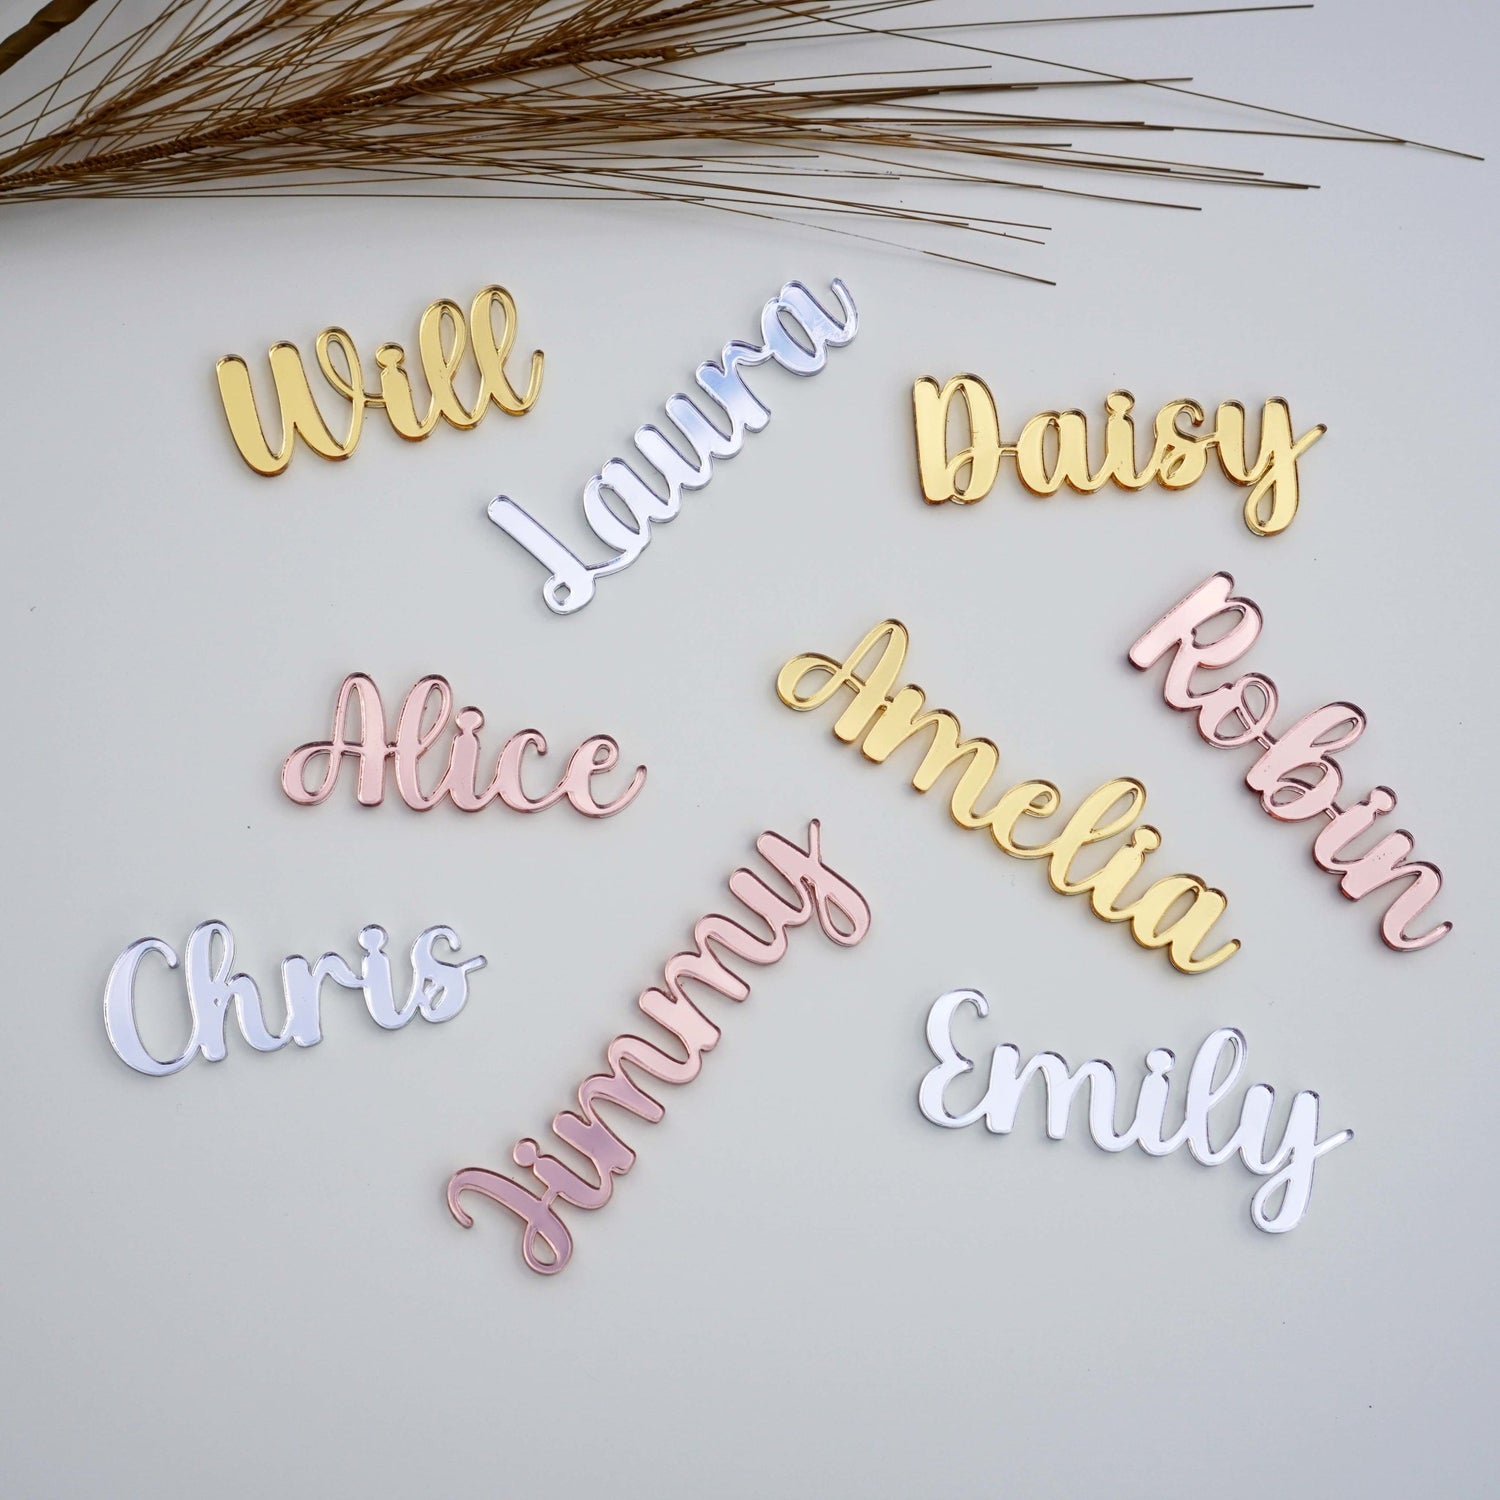 acrylic name tags for weddings